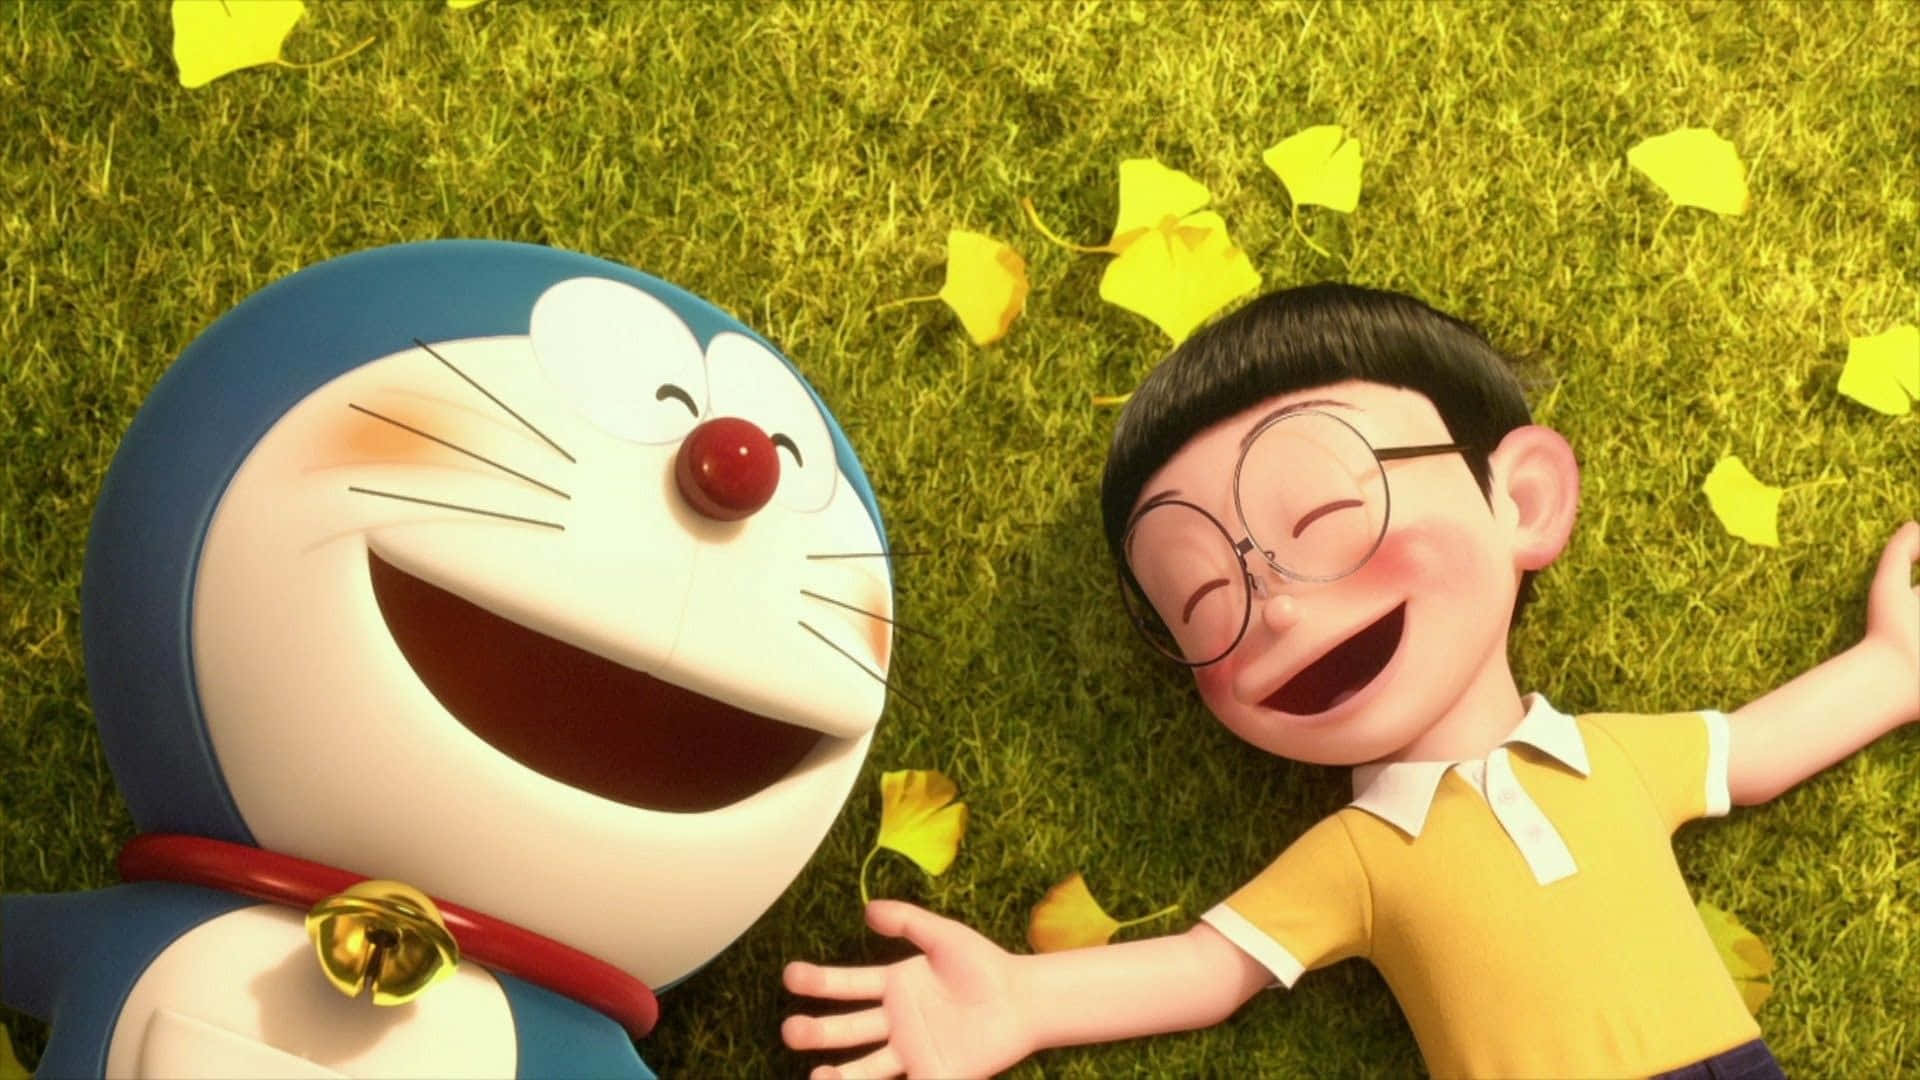 Doraemonun Niño Y Una Niña Acostados En El Césped.